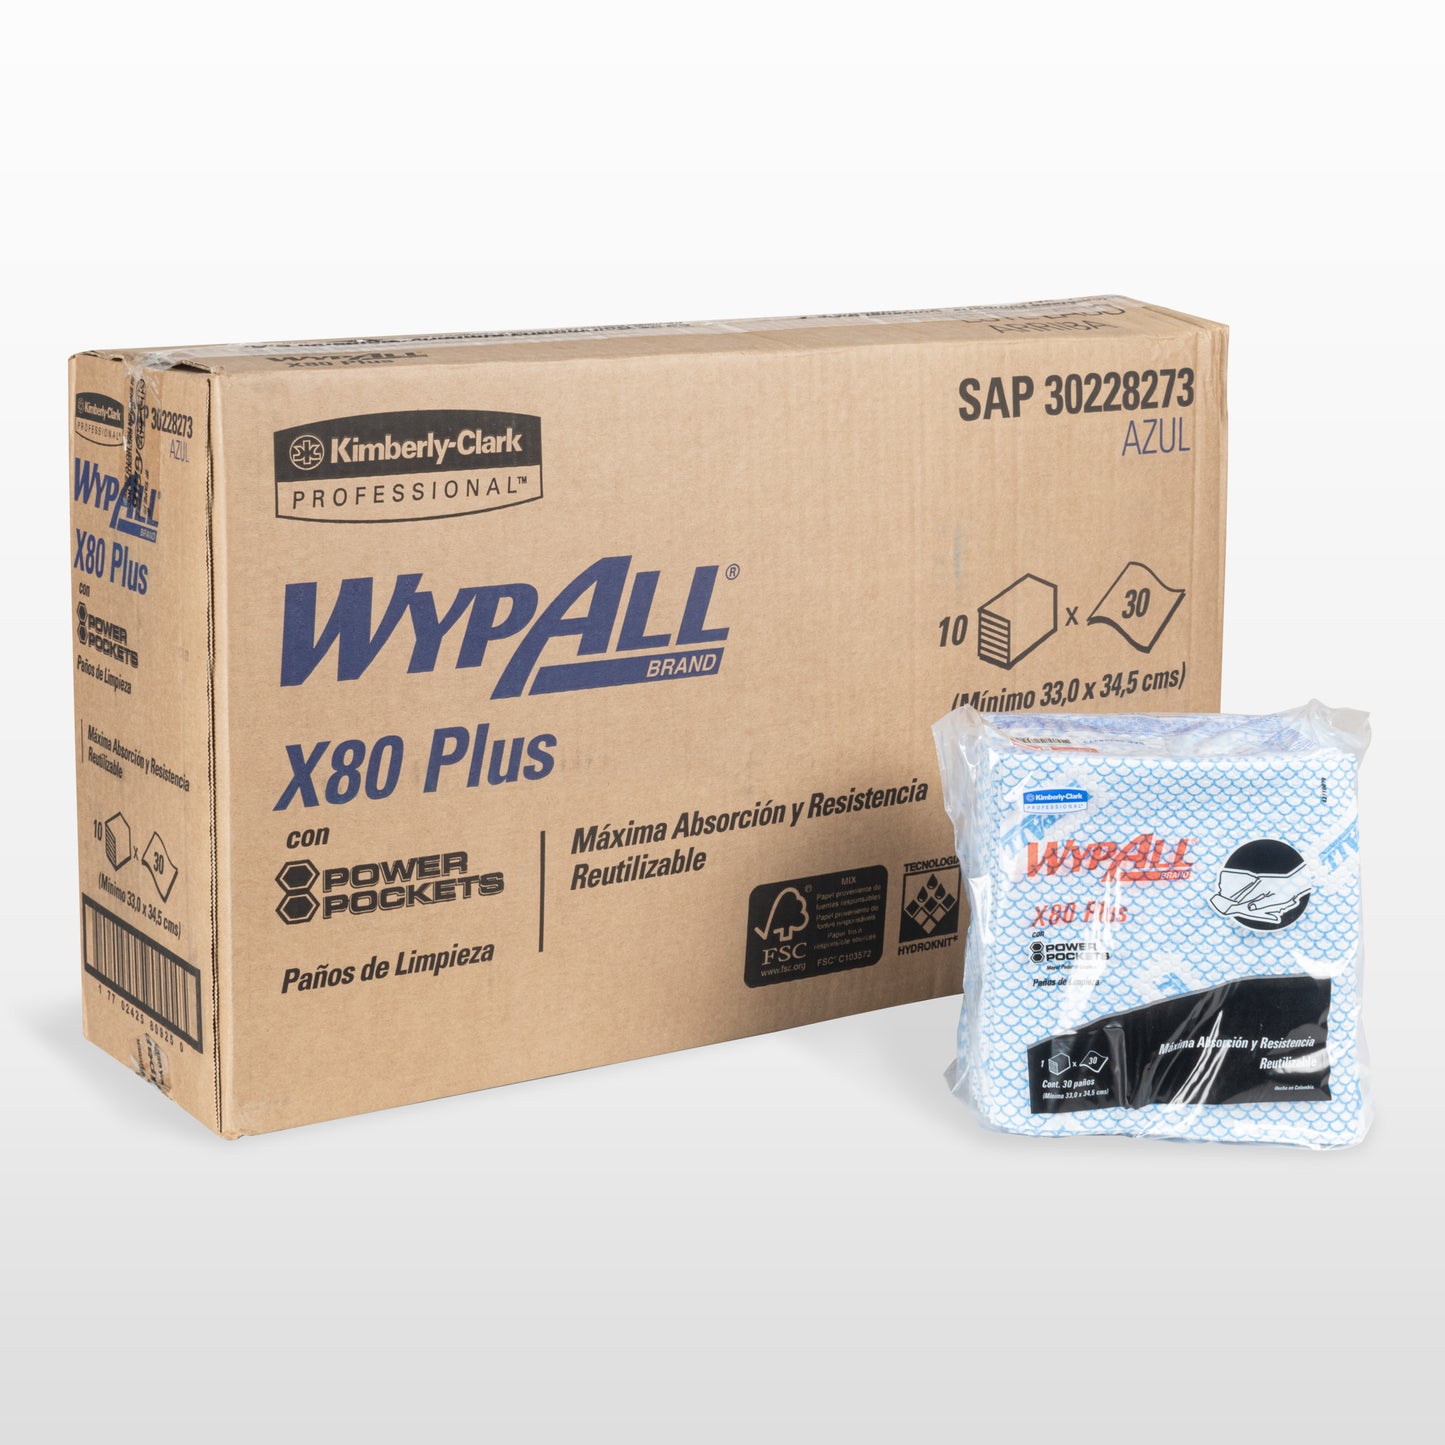 WYPALL® X80Plus Food Service Azul